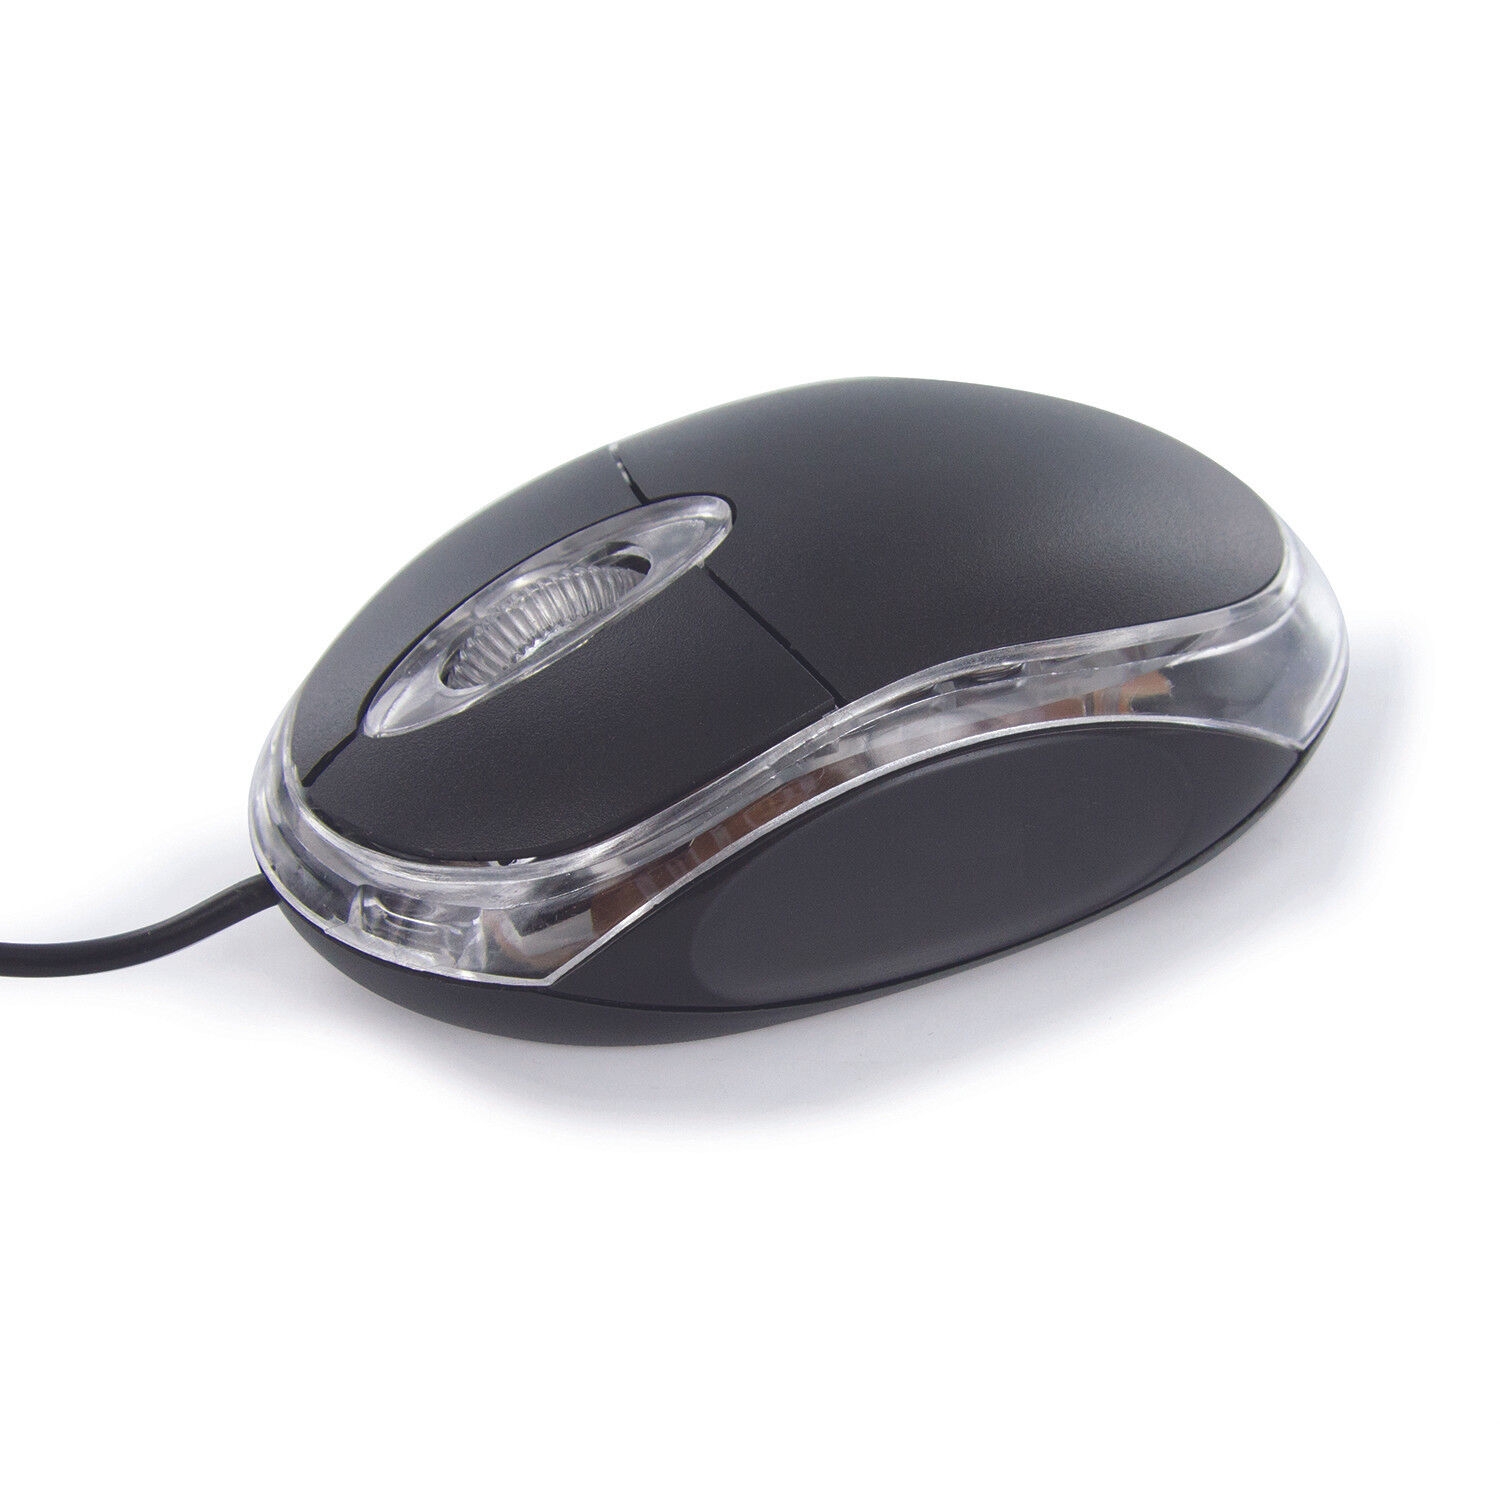 Souris sans fil rechargeable PSWCM8186BK - Noir POSS : la souris à